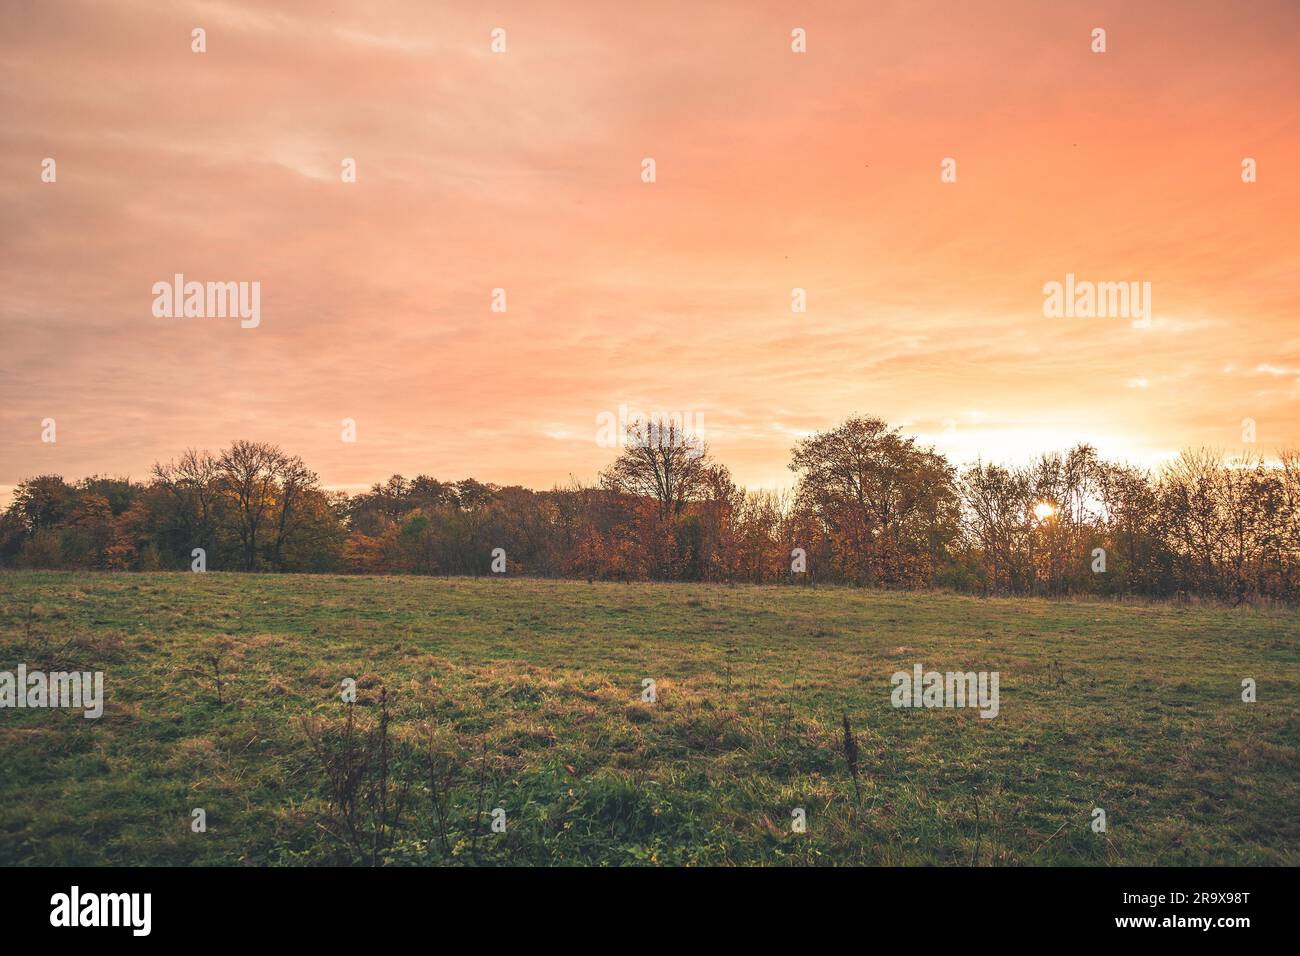 Landschaft Sonnenuntergang mit orange Farben in den Himmel in einer ländlichen Landschaft mit grünen Wiesen und bunten Bäumen im Herbst Stockfoto